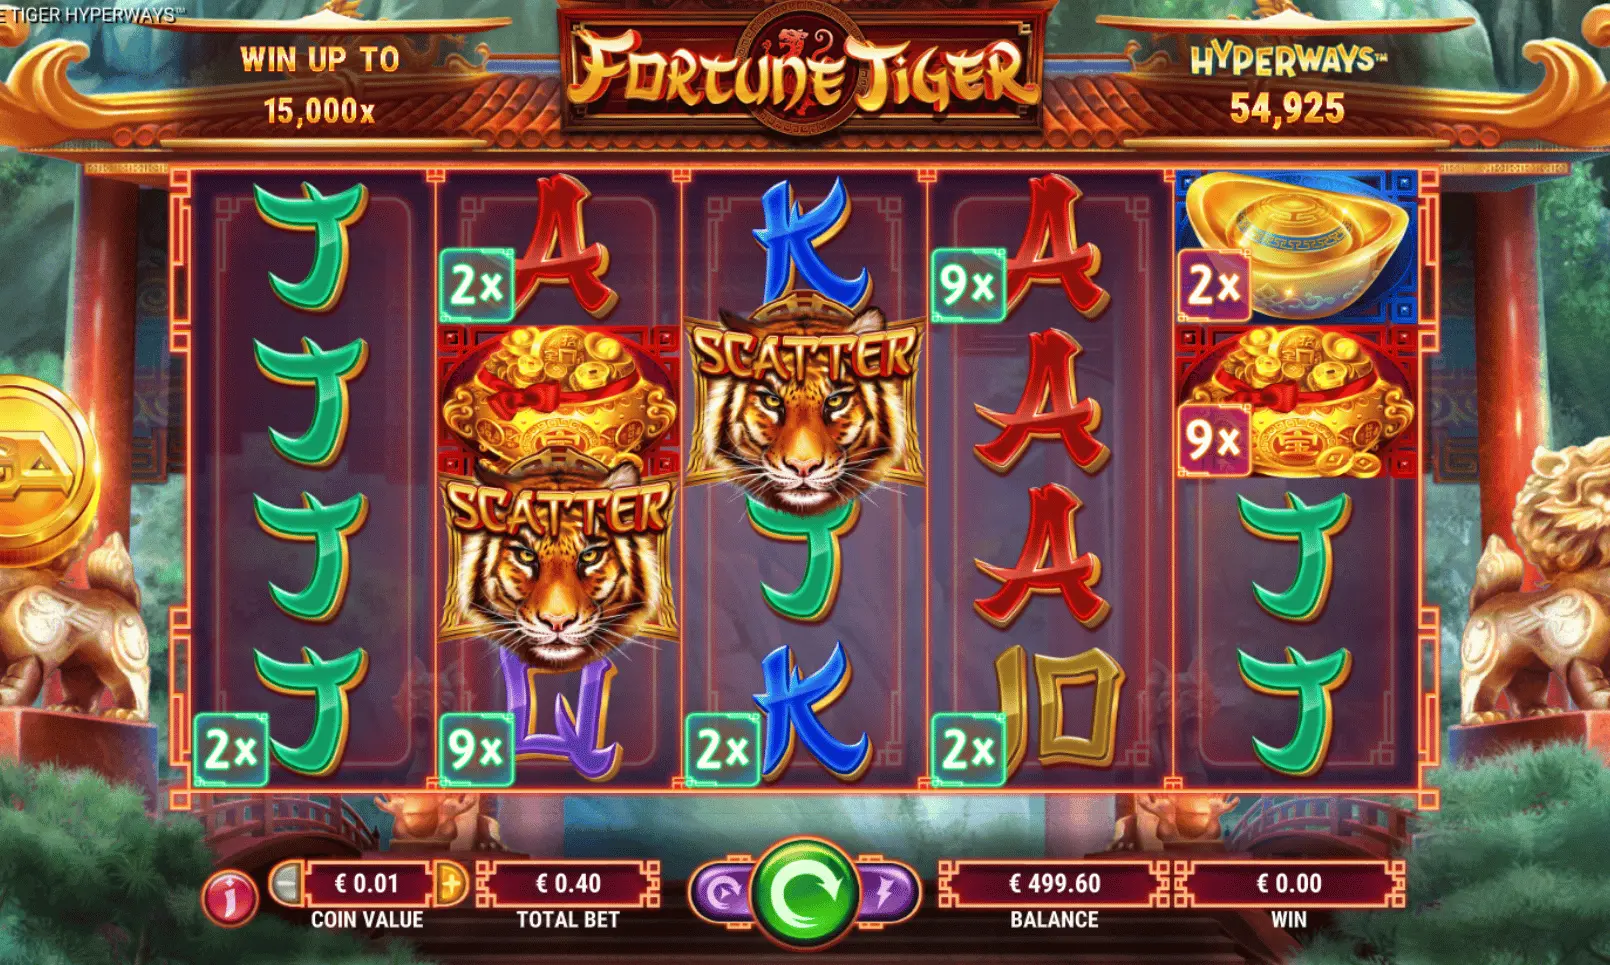 Captura do Fortune Tiger - Jogo do Tigre